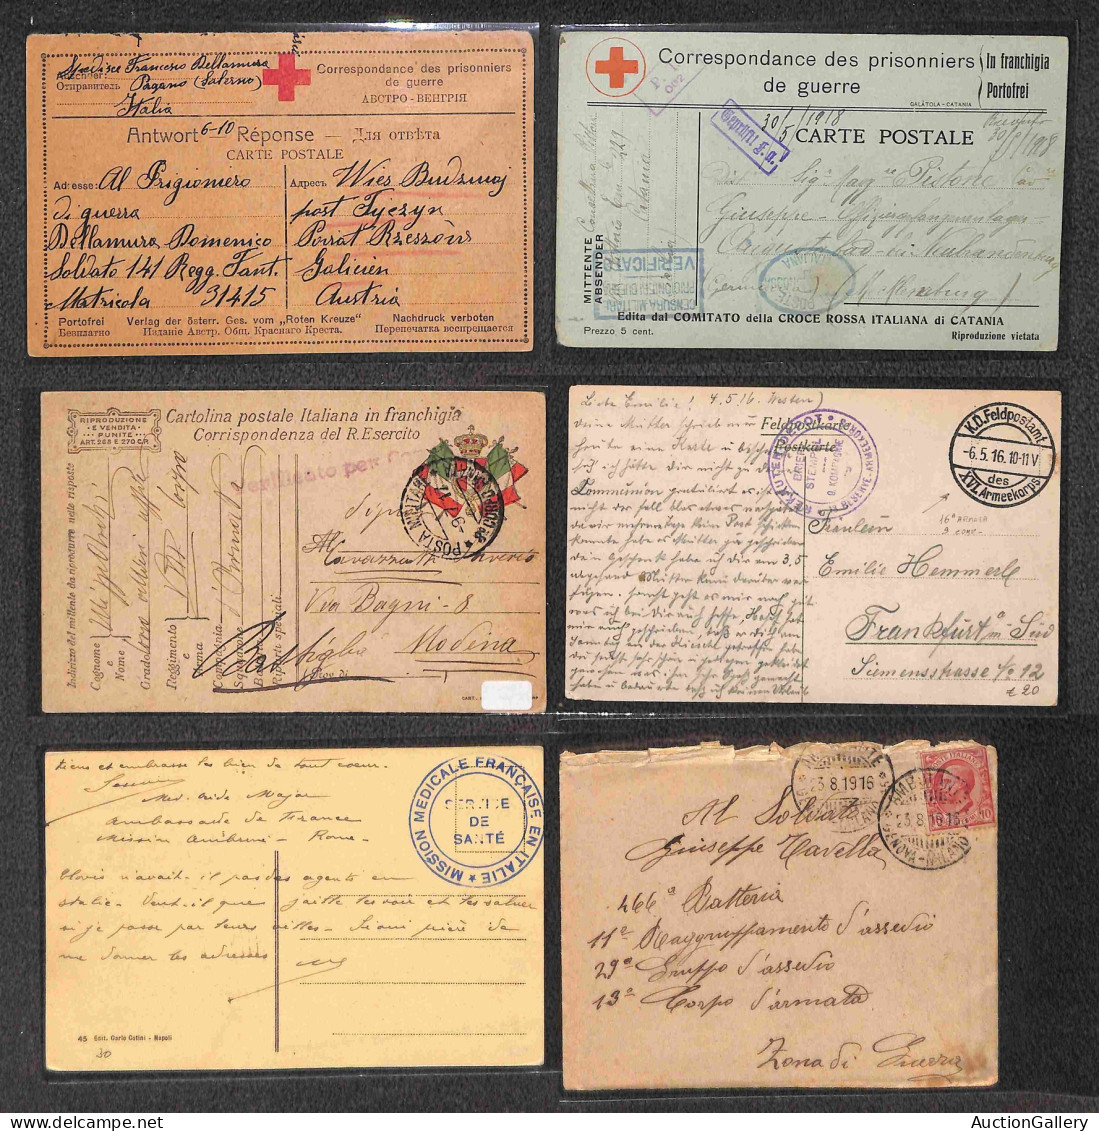 Lotti&Collezioni - Area Italiana - POSTA MILITARE - 1915/1919 - Lotto di 53 cartoline  per lo più usate e 9 bustine con 